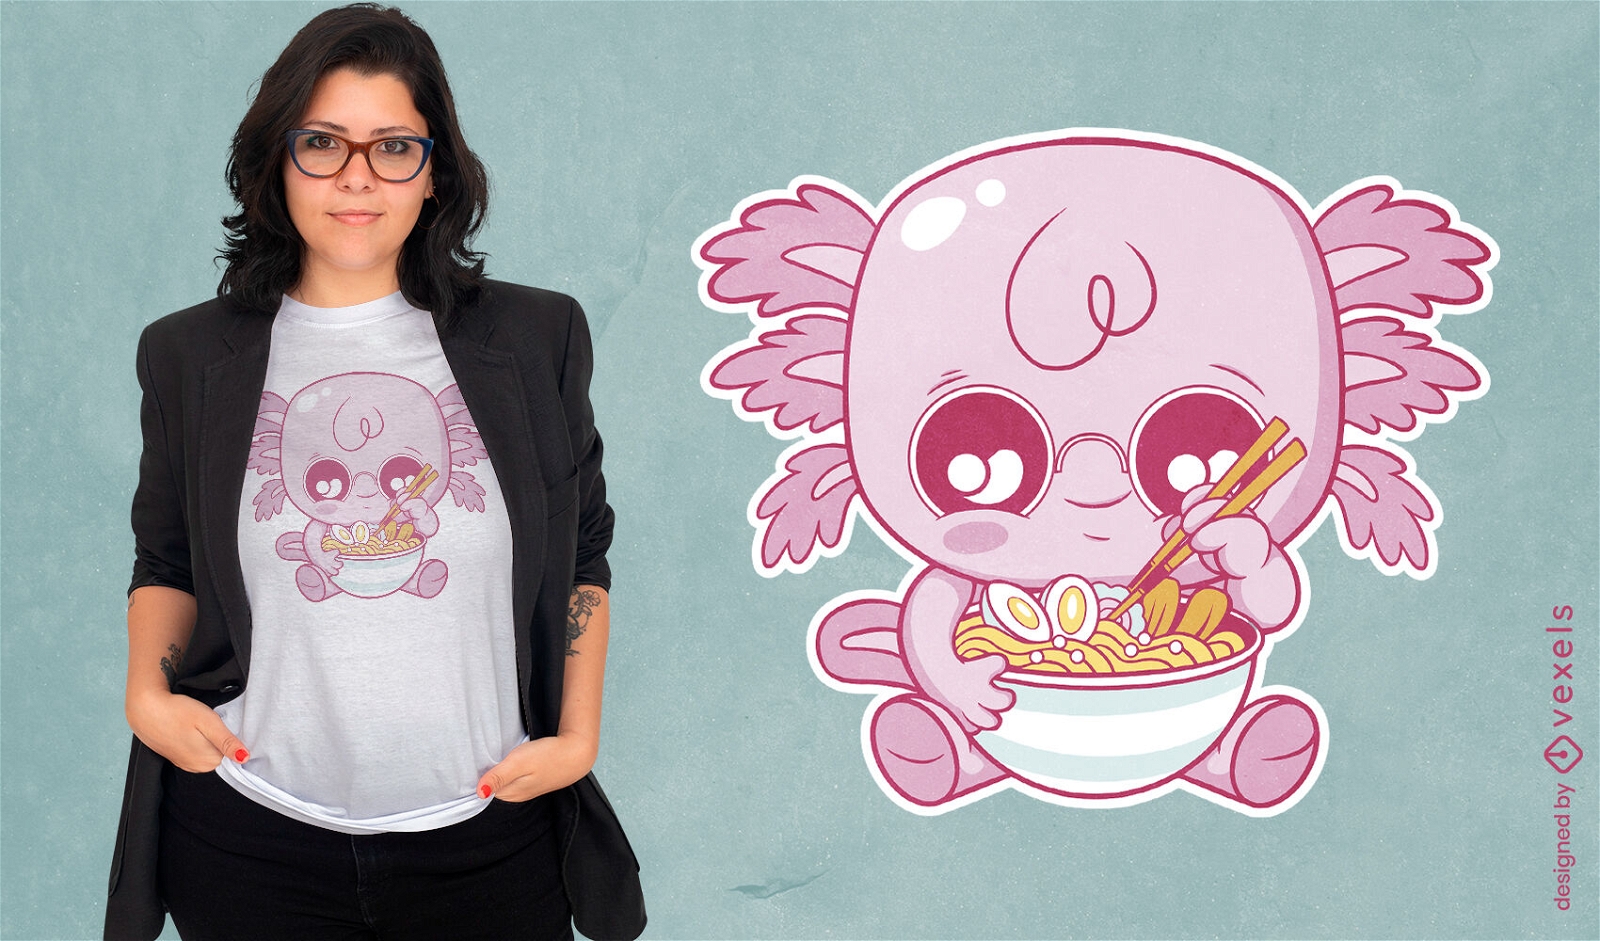 Adorable axolotl comiendo diseño de camiseta de ramen